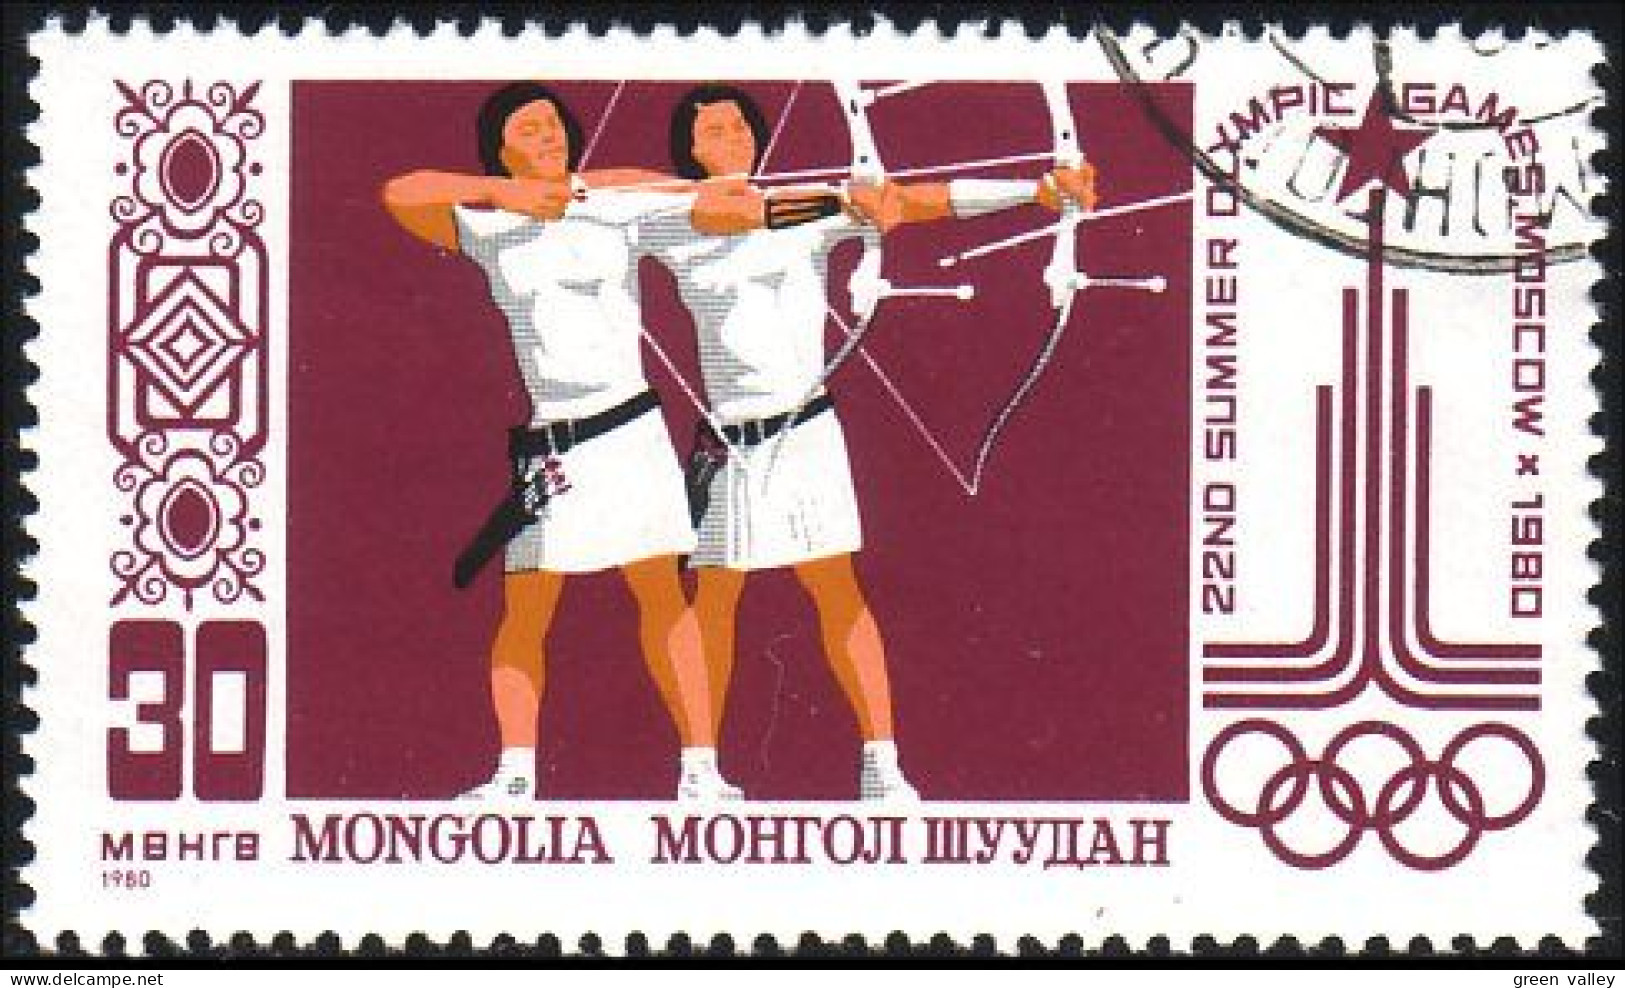 620 Mongolie Jeux De Moscou Tir à L'arc Bow And Arrow Moscow Games (MNG-24) - Tir à L'Arc